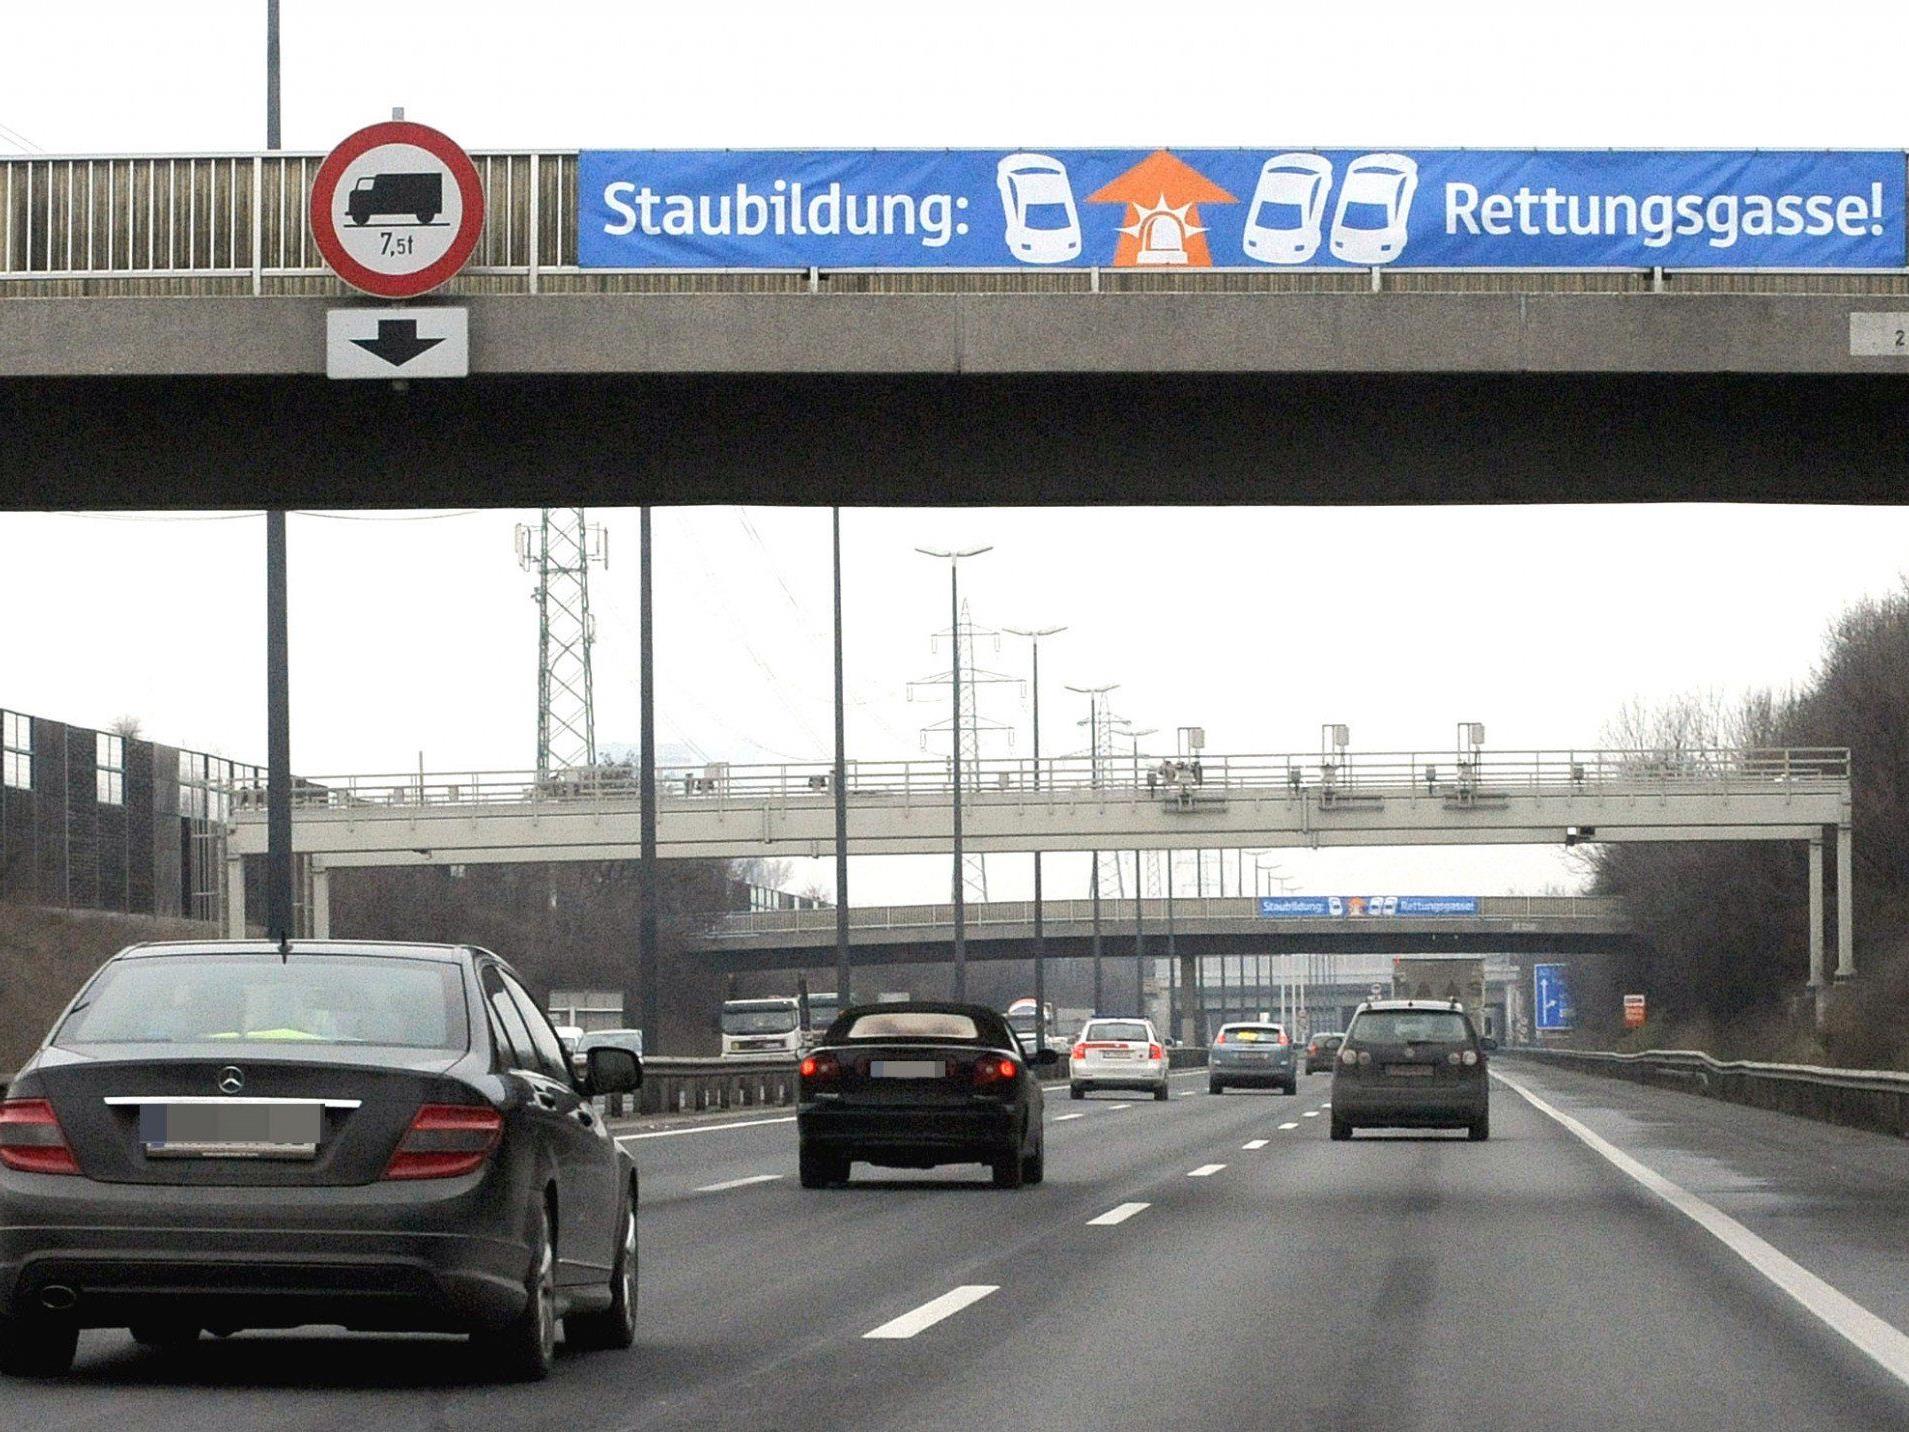 Mehr als 320 Millionen Euro sollen pro Jahr für die Sanierung des Autobahnnetzes ausgegeben werden.